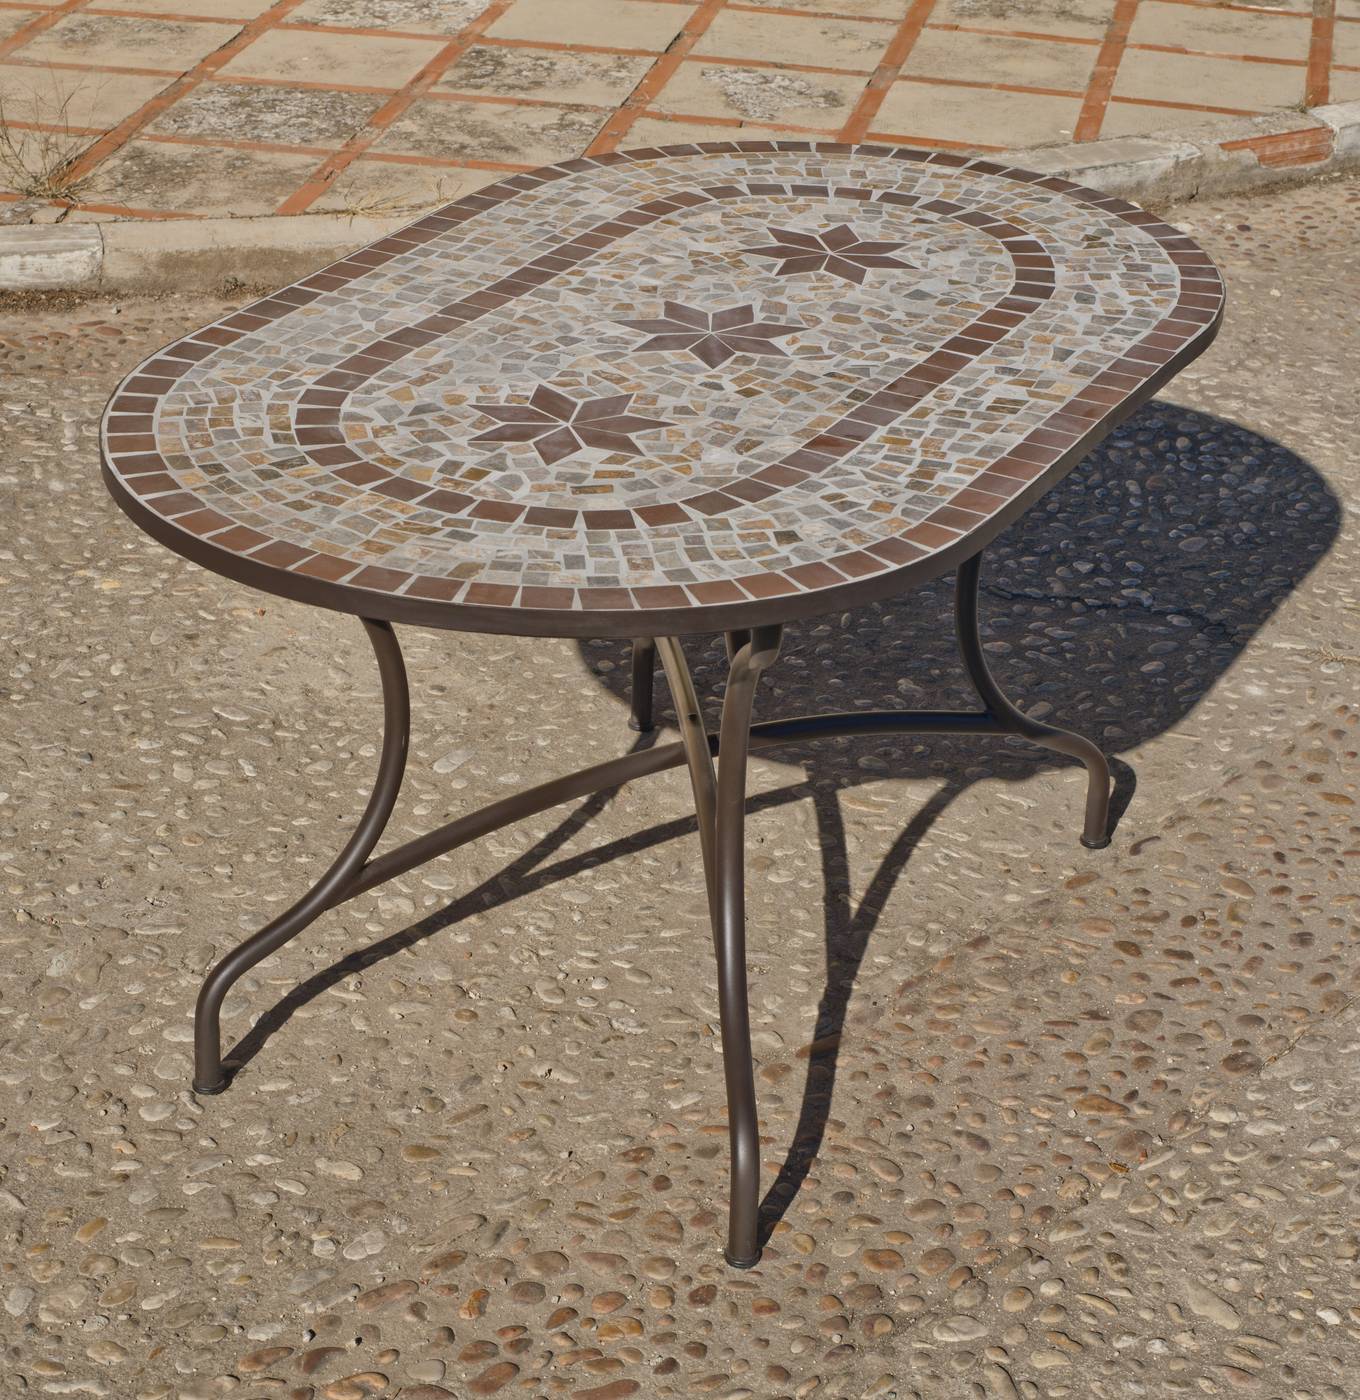 Conjunto Mosaico Luana-Caimán 150-4 - Conjunto para terraza o jardín: 1 mesa de forja con tablero mosaico + 4 sillones de forja + 4 cojines. Mesa válida para 6 sillones.